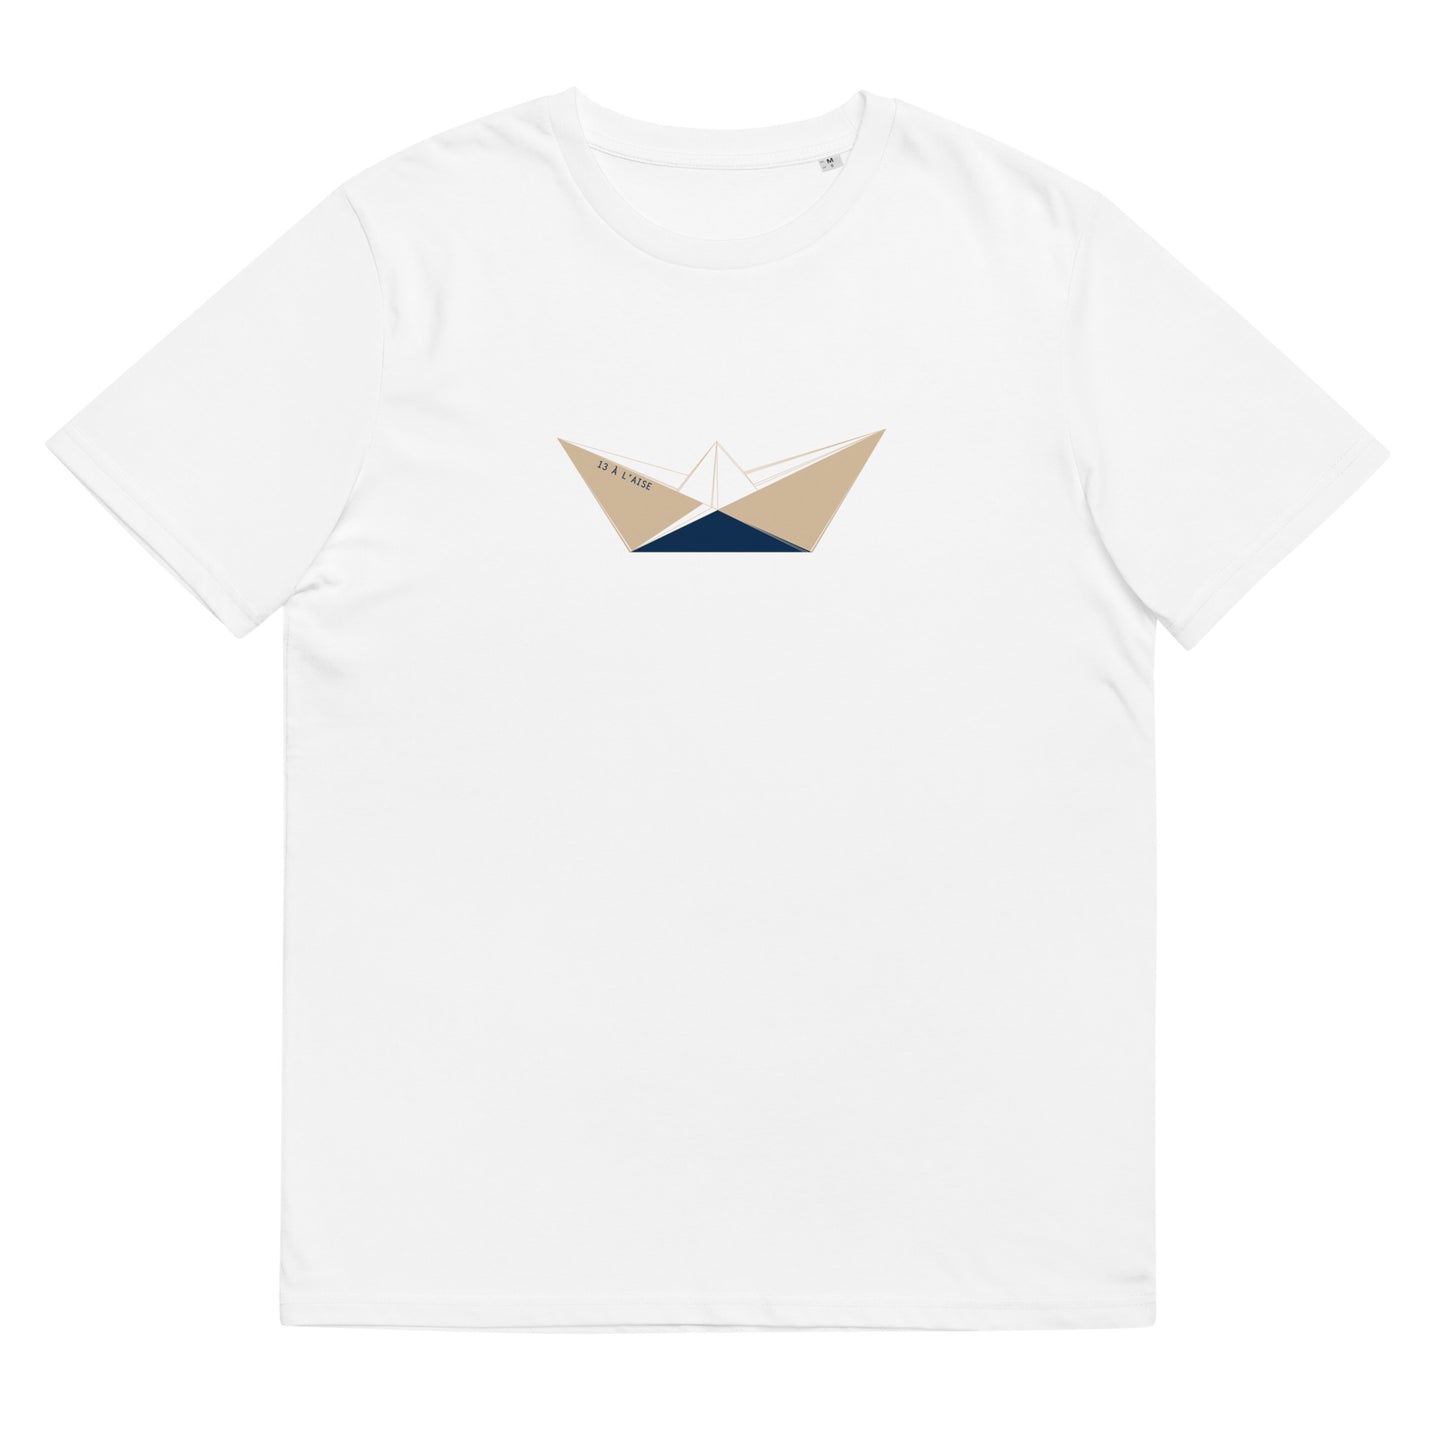 Tee shirt manches courtes - Origami bateau